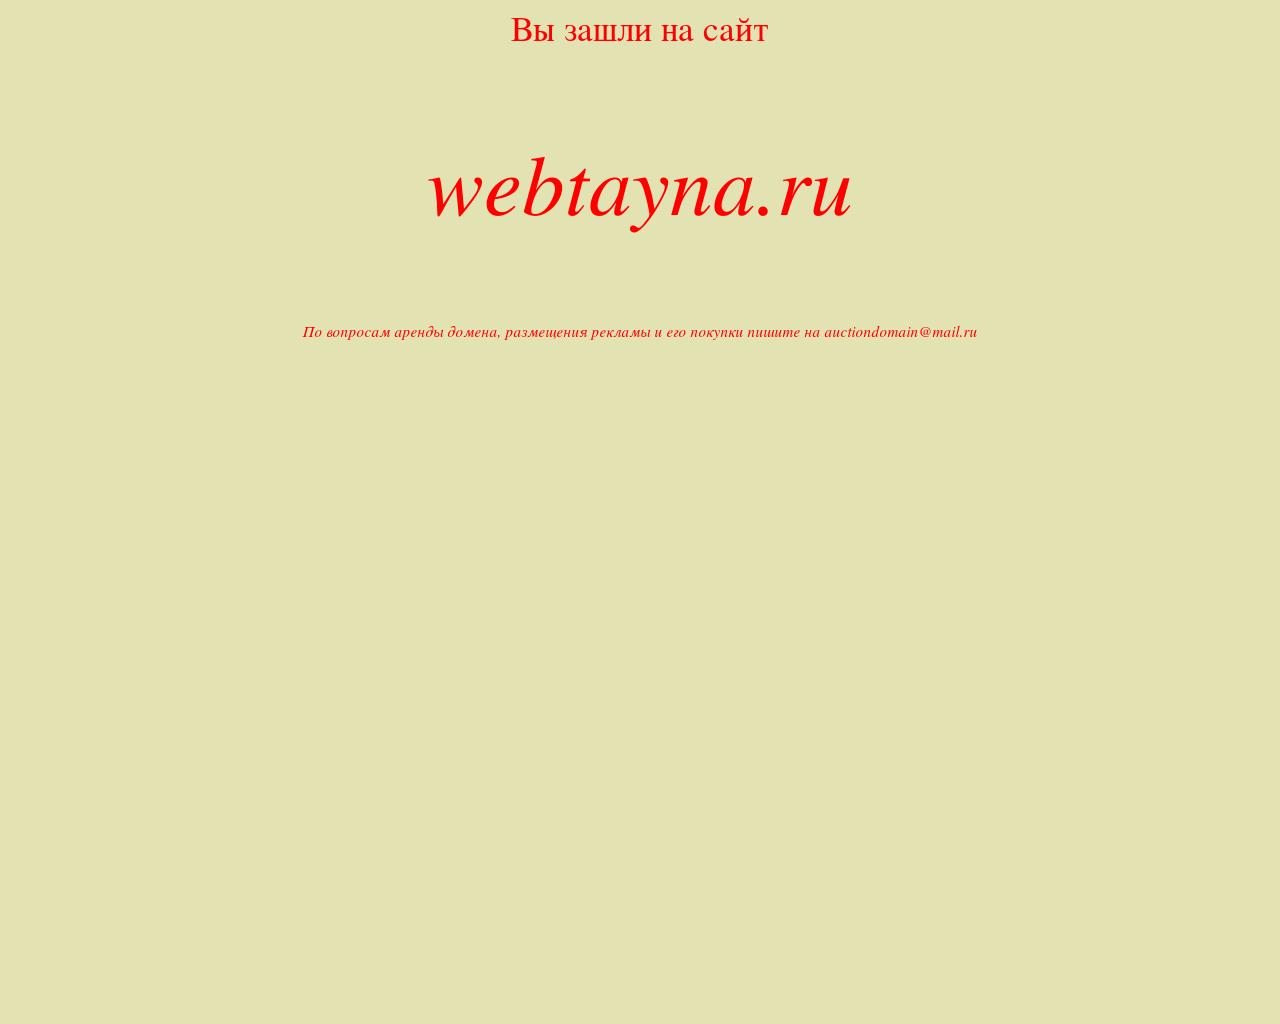 Изображение сайта webtayna.ru в разрешении 1280x1024